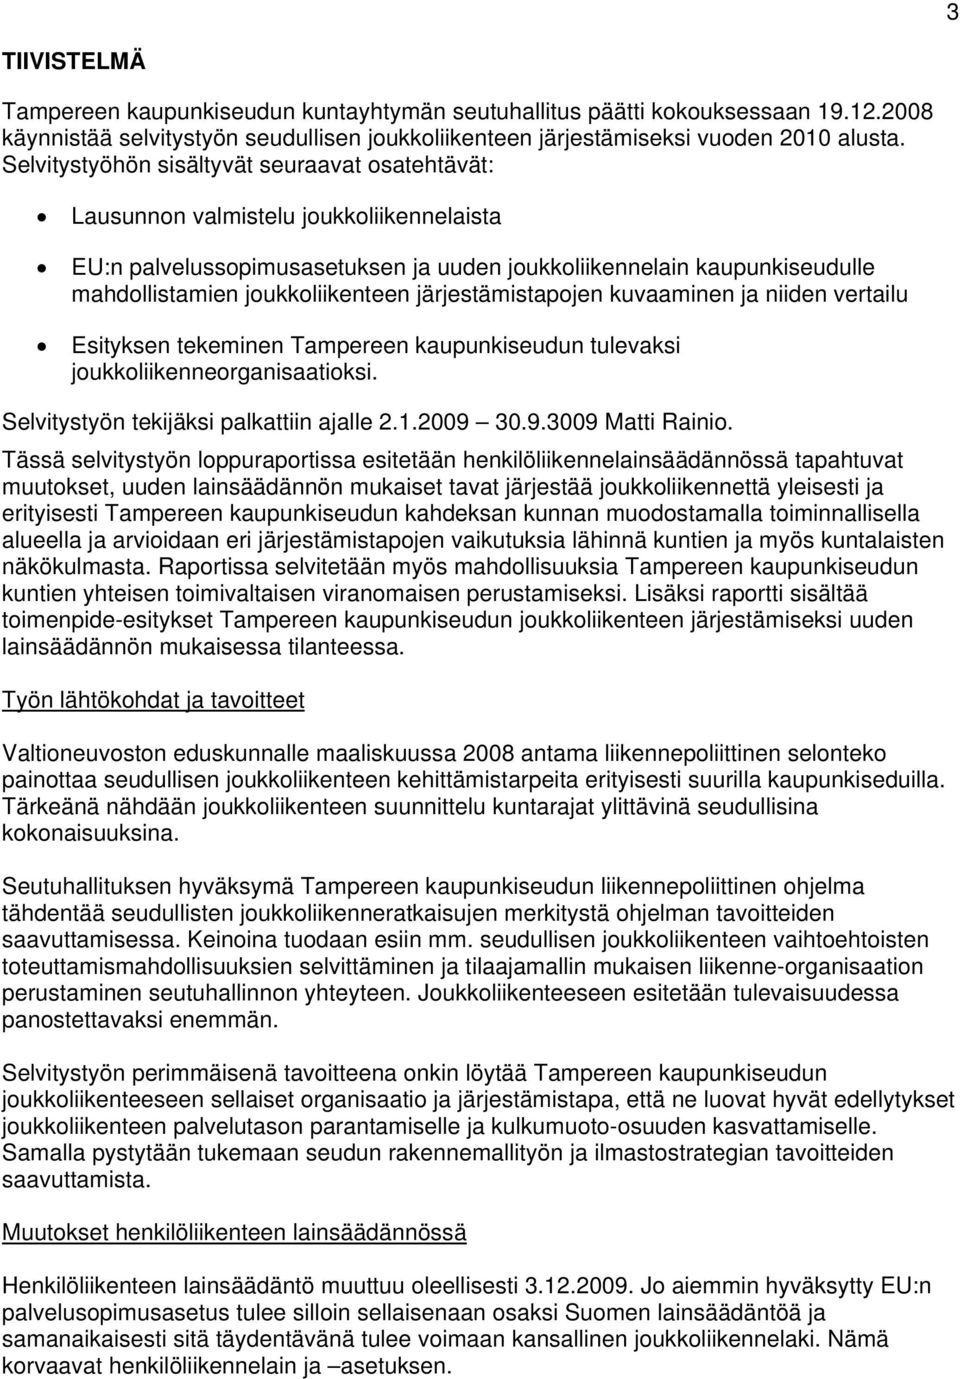 järjestämistapojen kuvaaminen ja niiden vertailu Esityksen tekeminen Tampereen kaupunkiseudun tulevaksi joukkoliikenneorganisaatioksi. Selvitystyön tekijäksi palkattiin ajalle 2.1.2009 